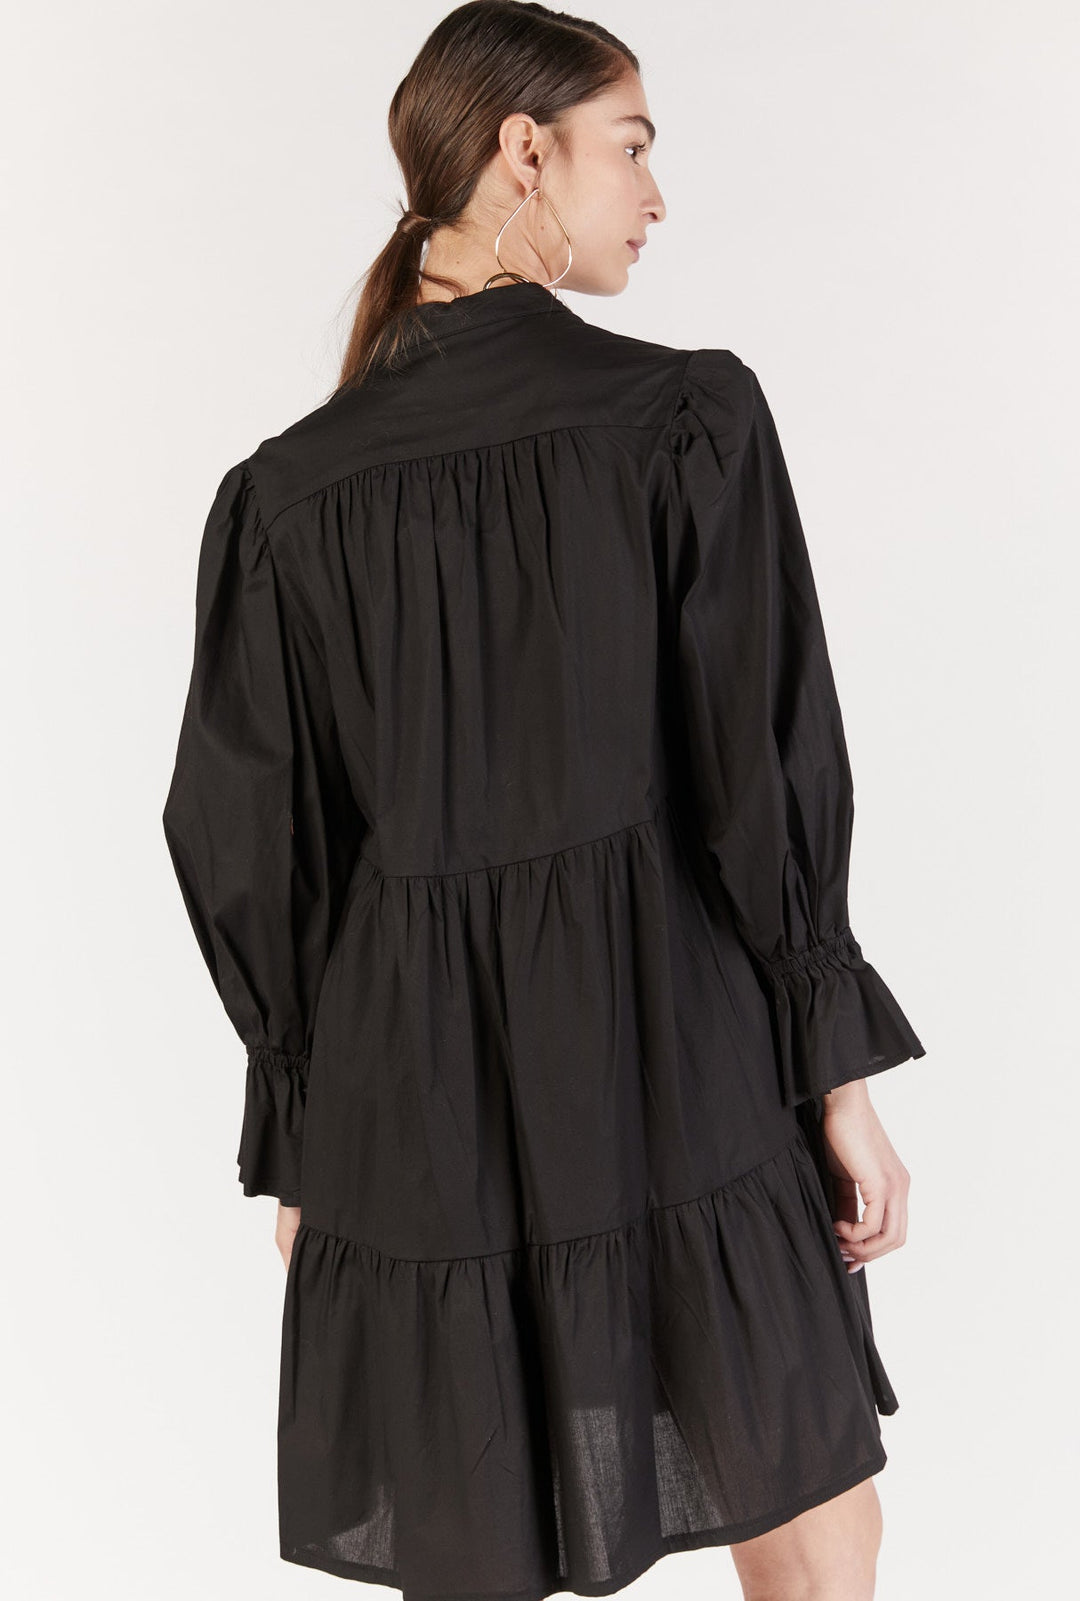 שמלת מיני ליפרי בצבע שחור - Dana Sidi